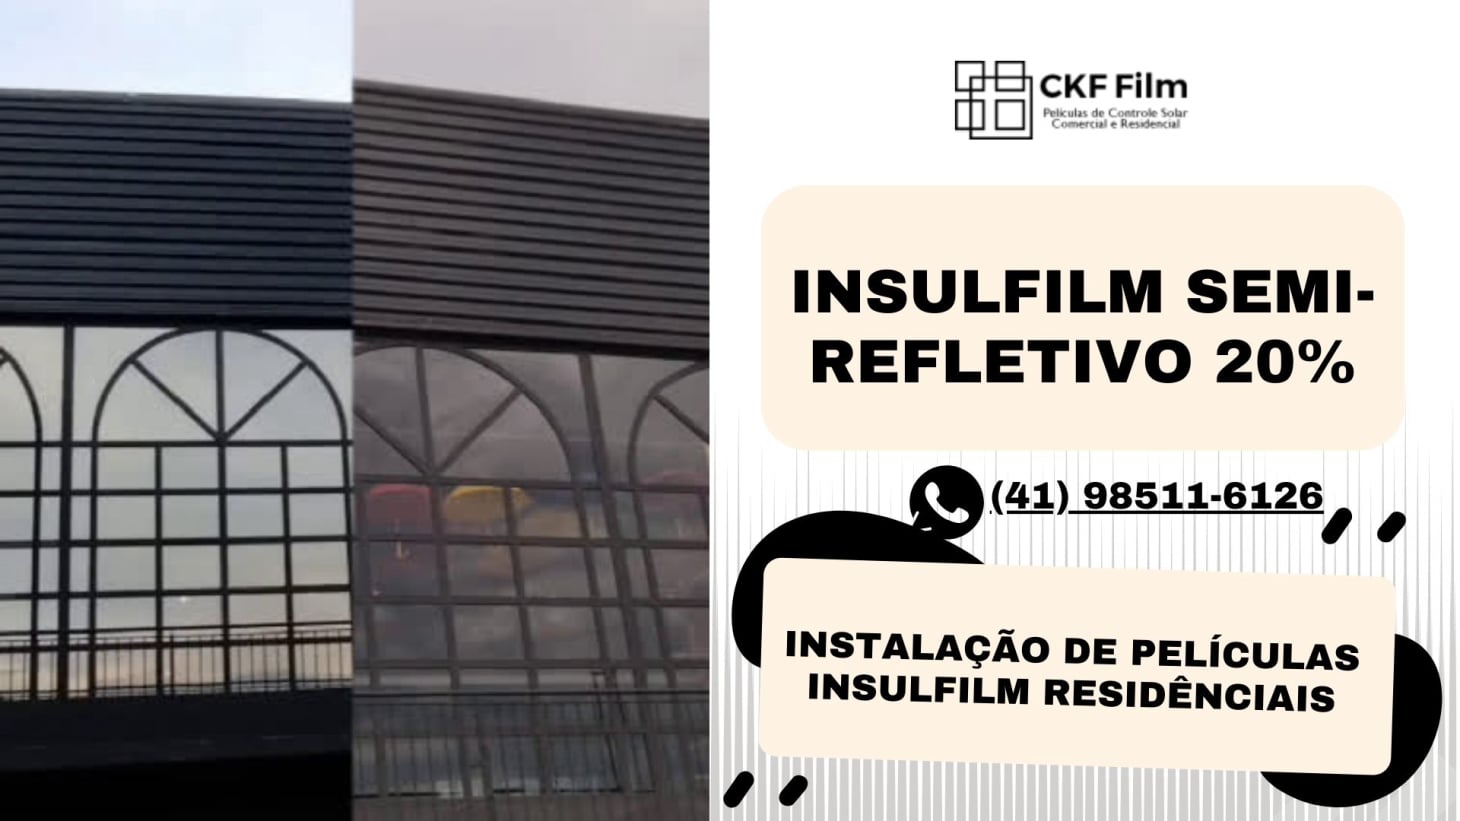 Conheça a magia do Insulfilm Semi-Refletivo 20% da CKF Films! Desfrute de uma redução de 59% do calor e total privacidade durante o dia